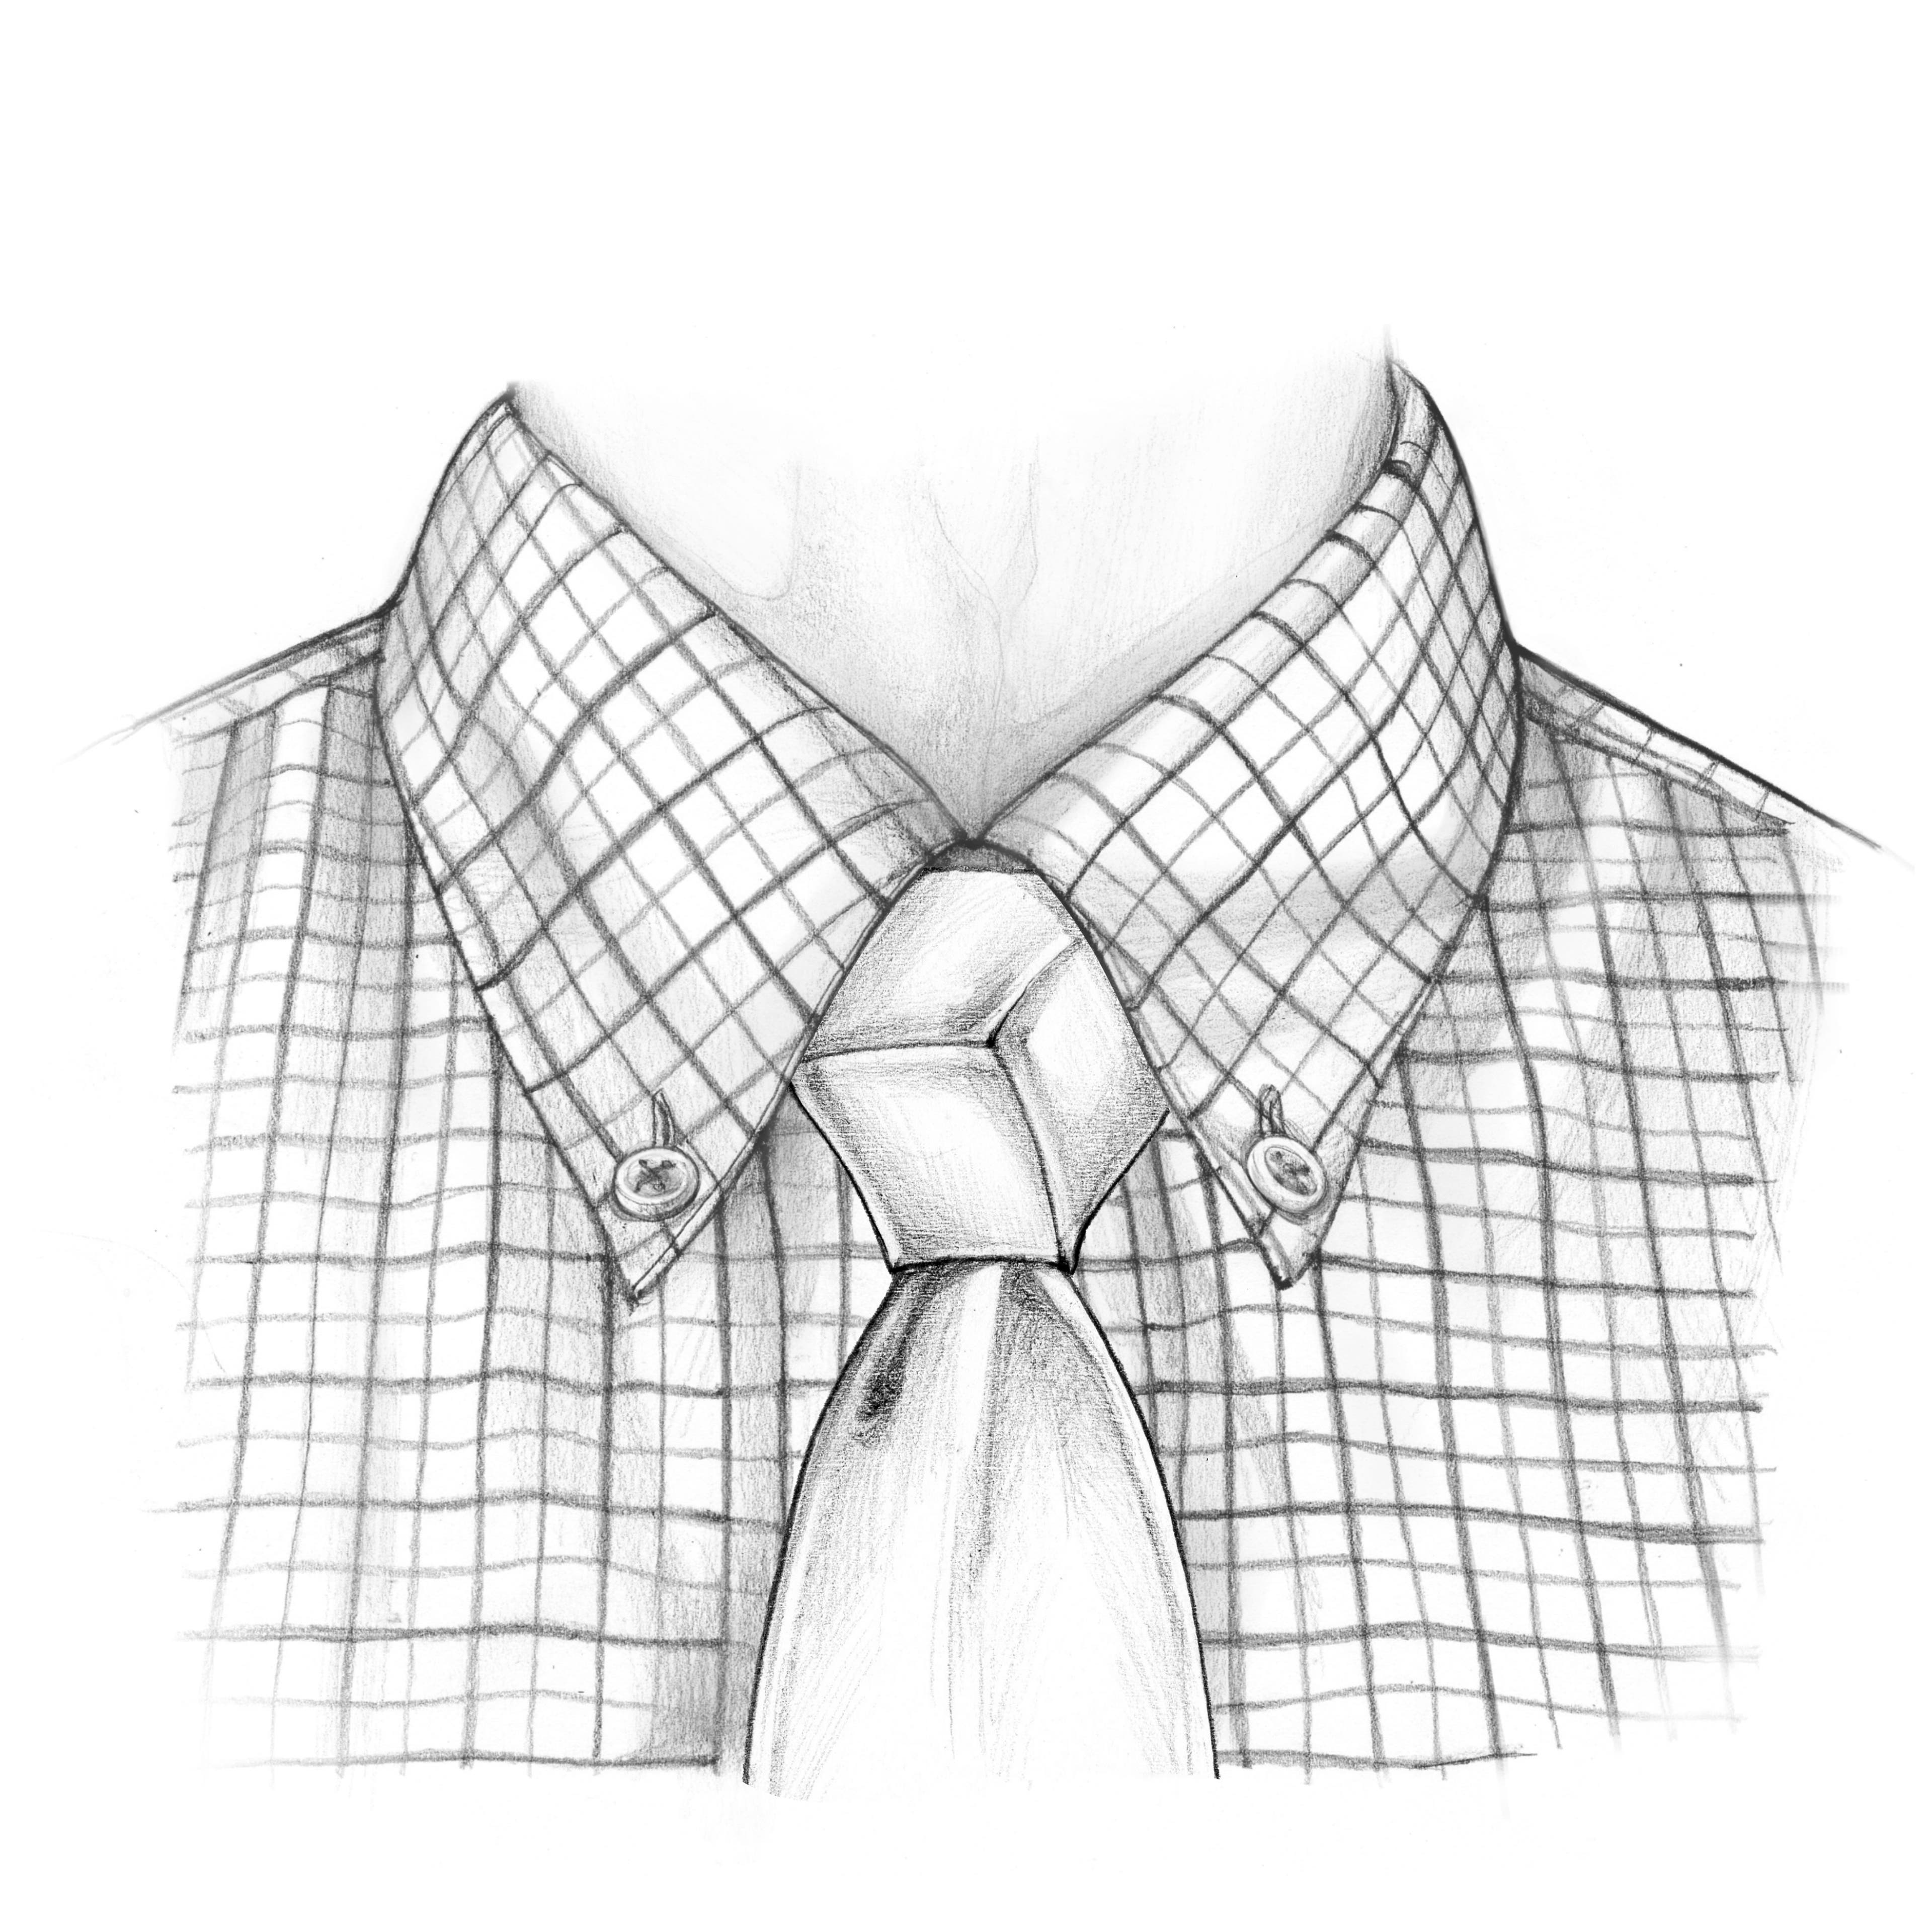 Der Trinity Krawattenknoten